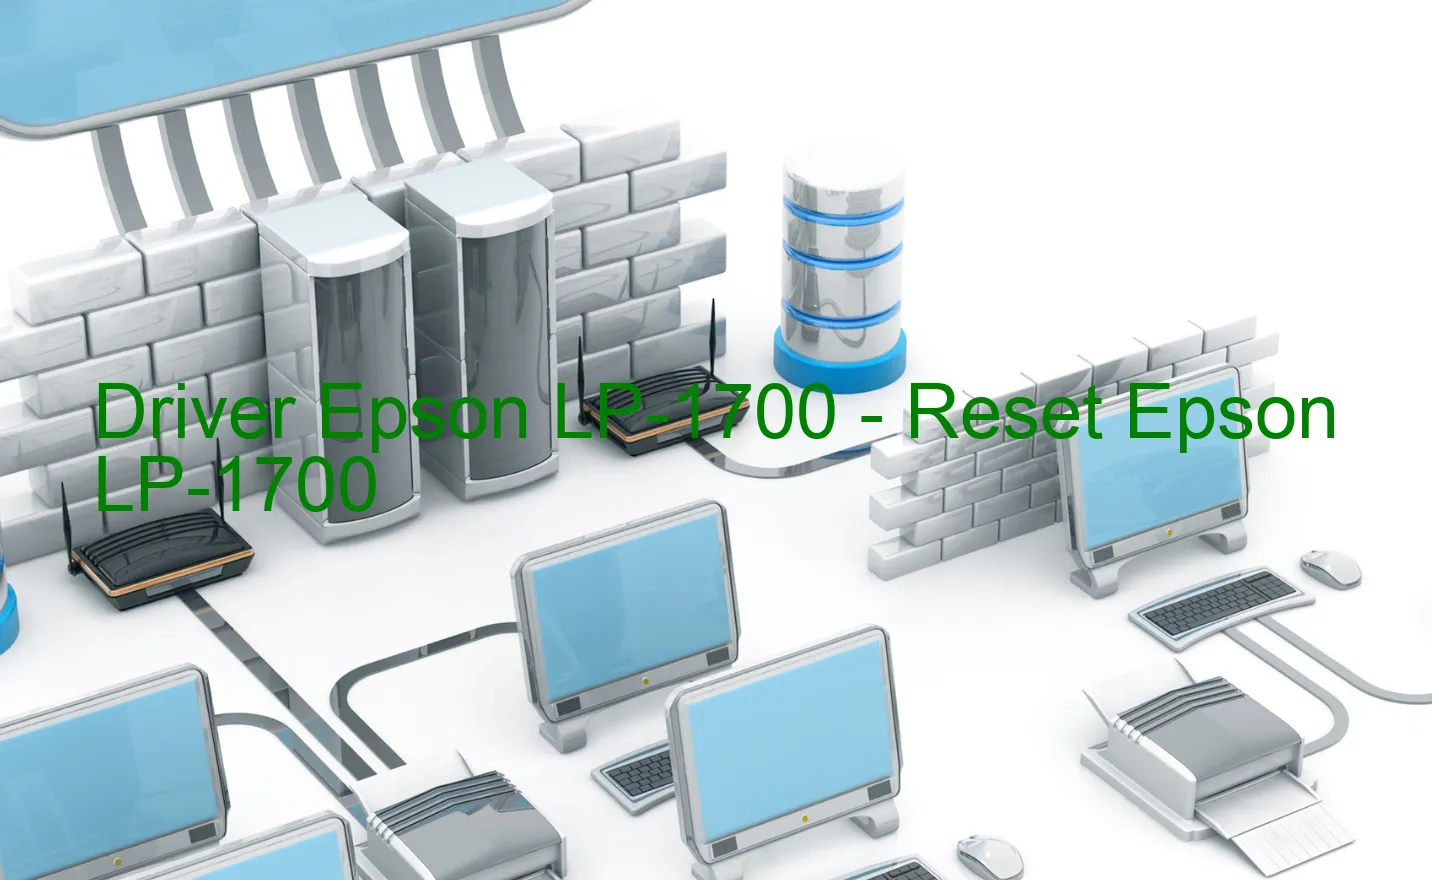 Epson LP-1700のドライバー、Epson LP-1700のリセットソフトウェア